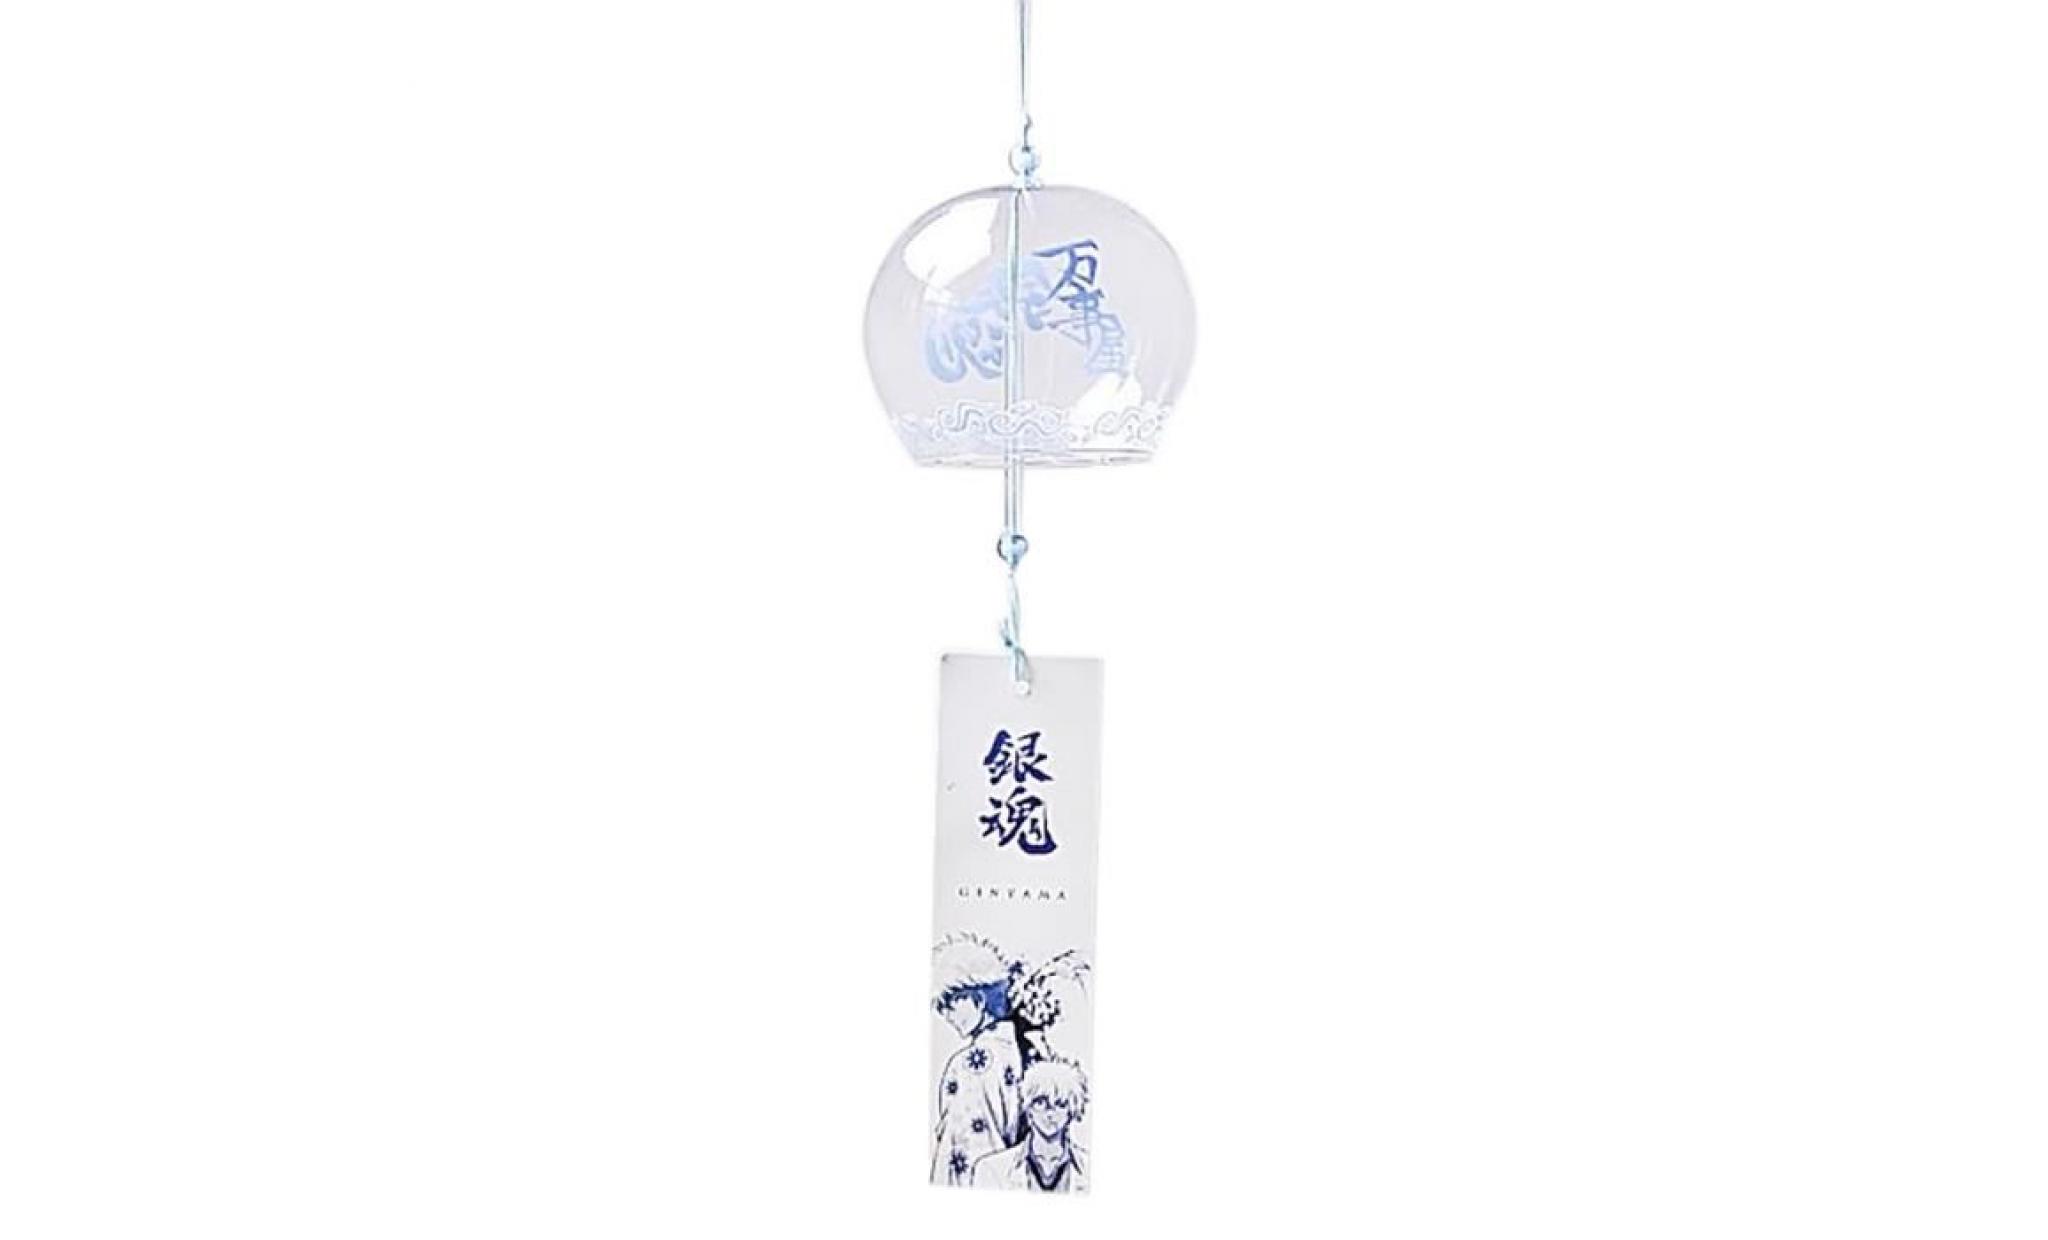 carillon brise en verre carillon de style japenese maison jardin suspendu décoration cadeau bricolage # 2